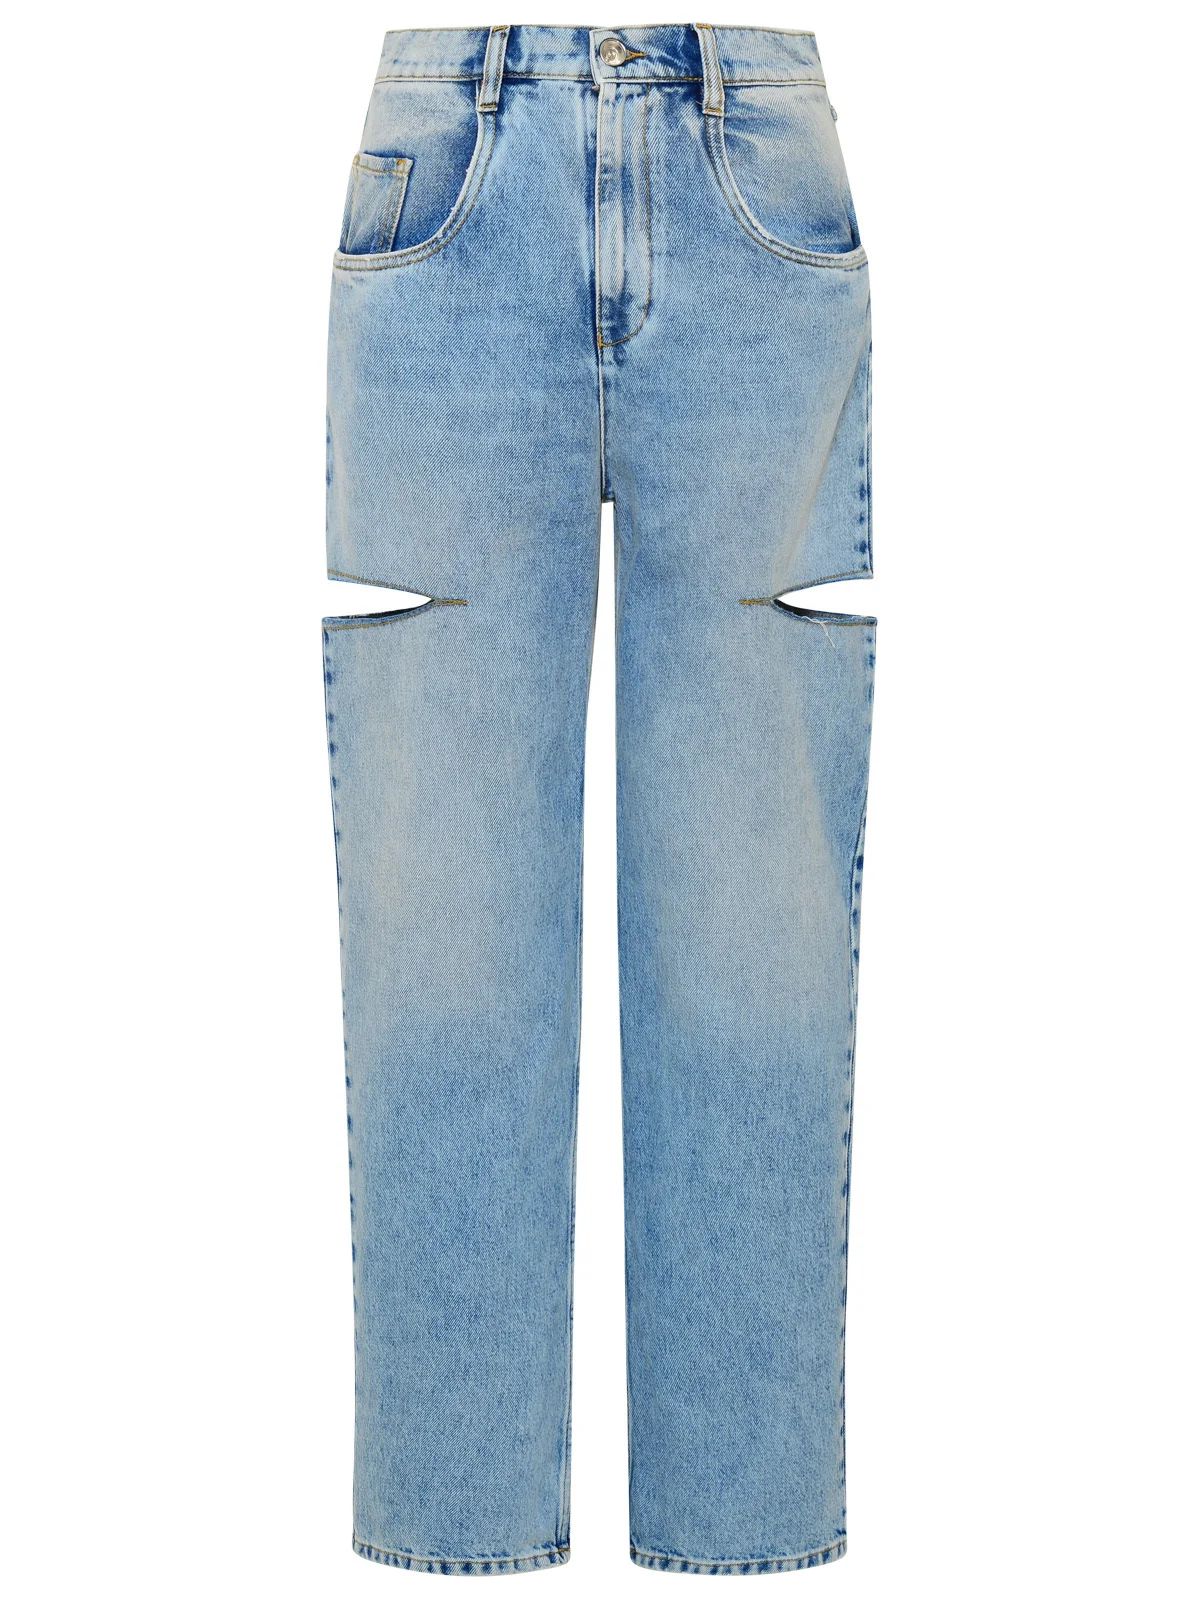 Maison Margiela Cut-Out Detailed Jeans | Cettire Global